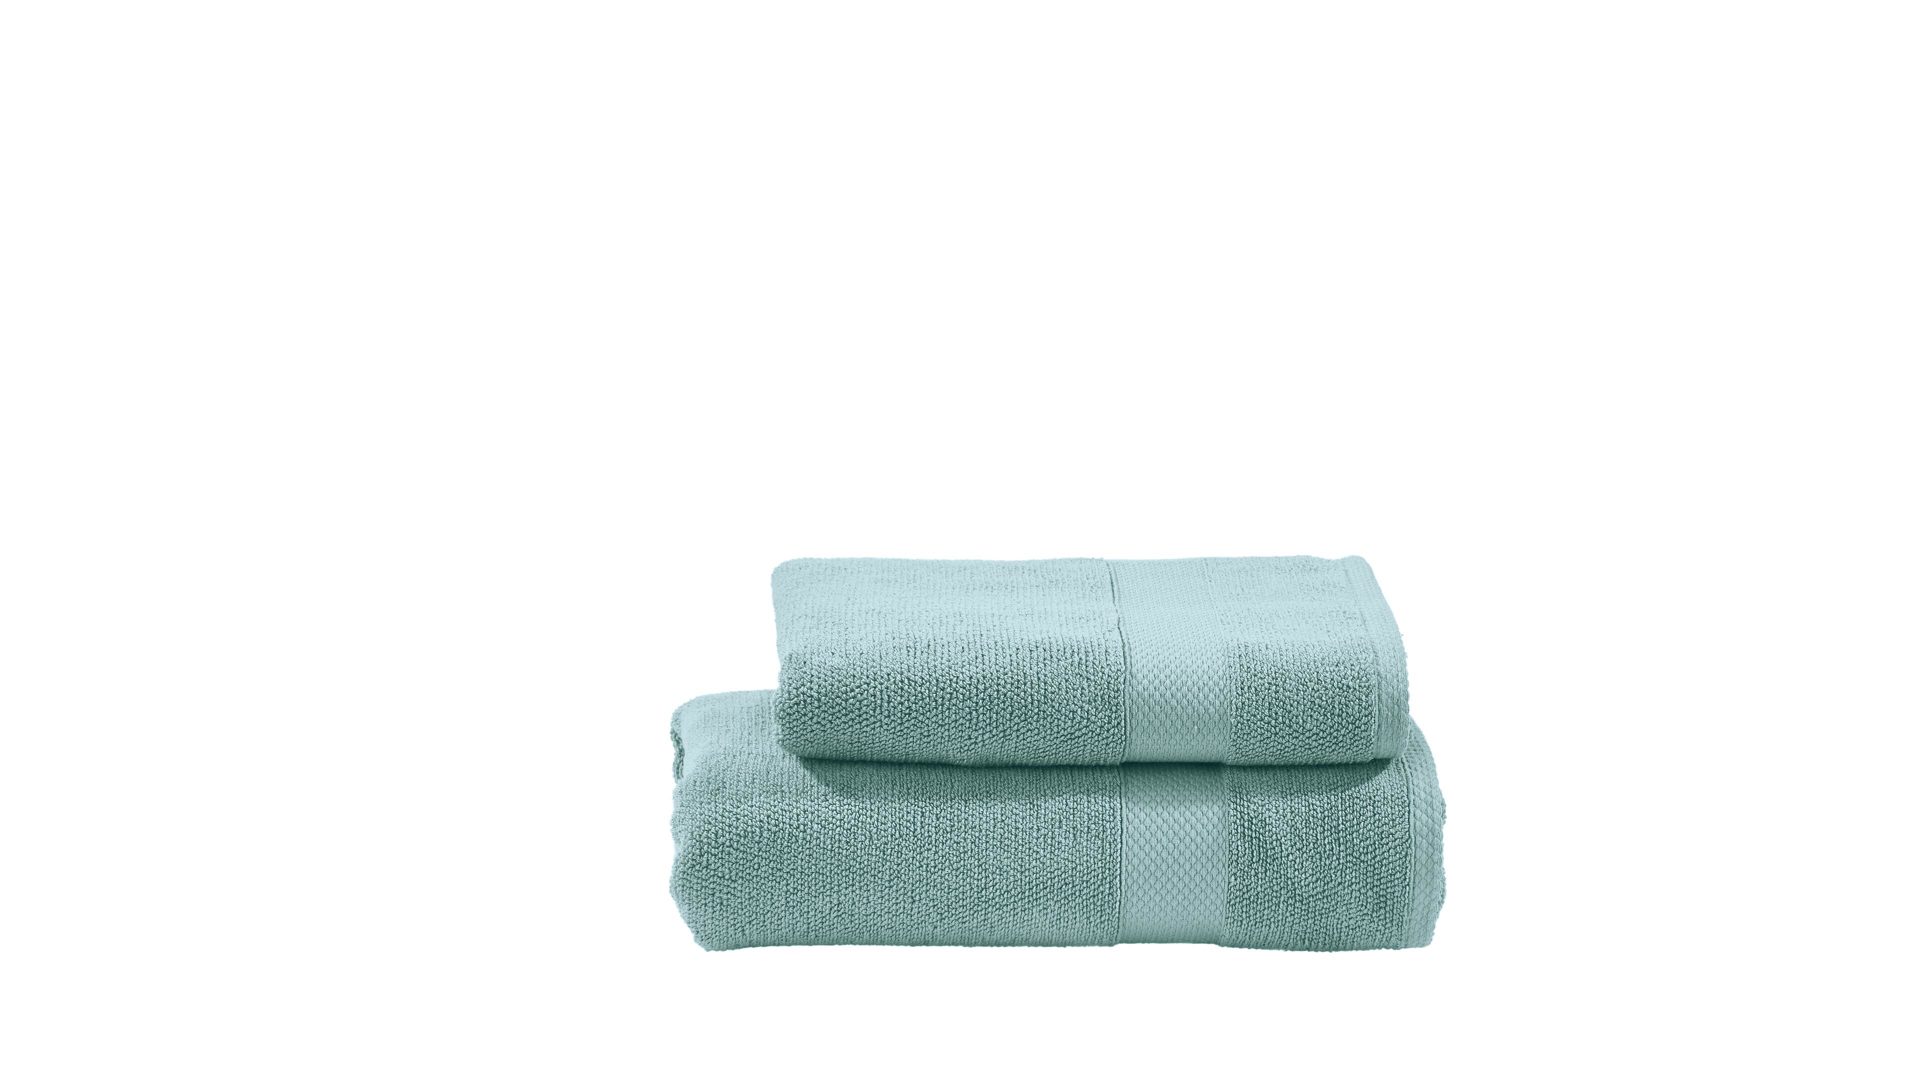 Hamamtuch Done® be different aus Stoff in Blau DONE® Handtuch-Set Deluxe für Ihre Heimtextilien blaue Baumwolle – zweiteilig